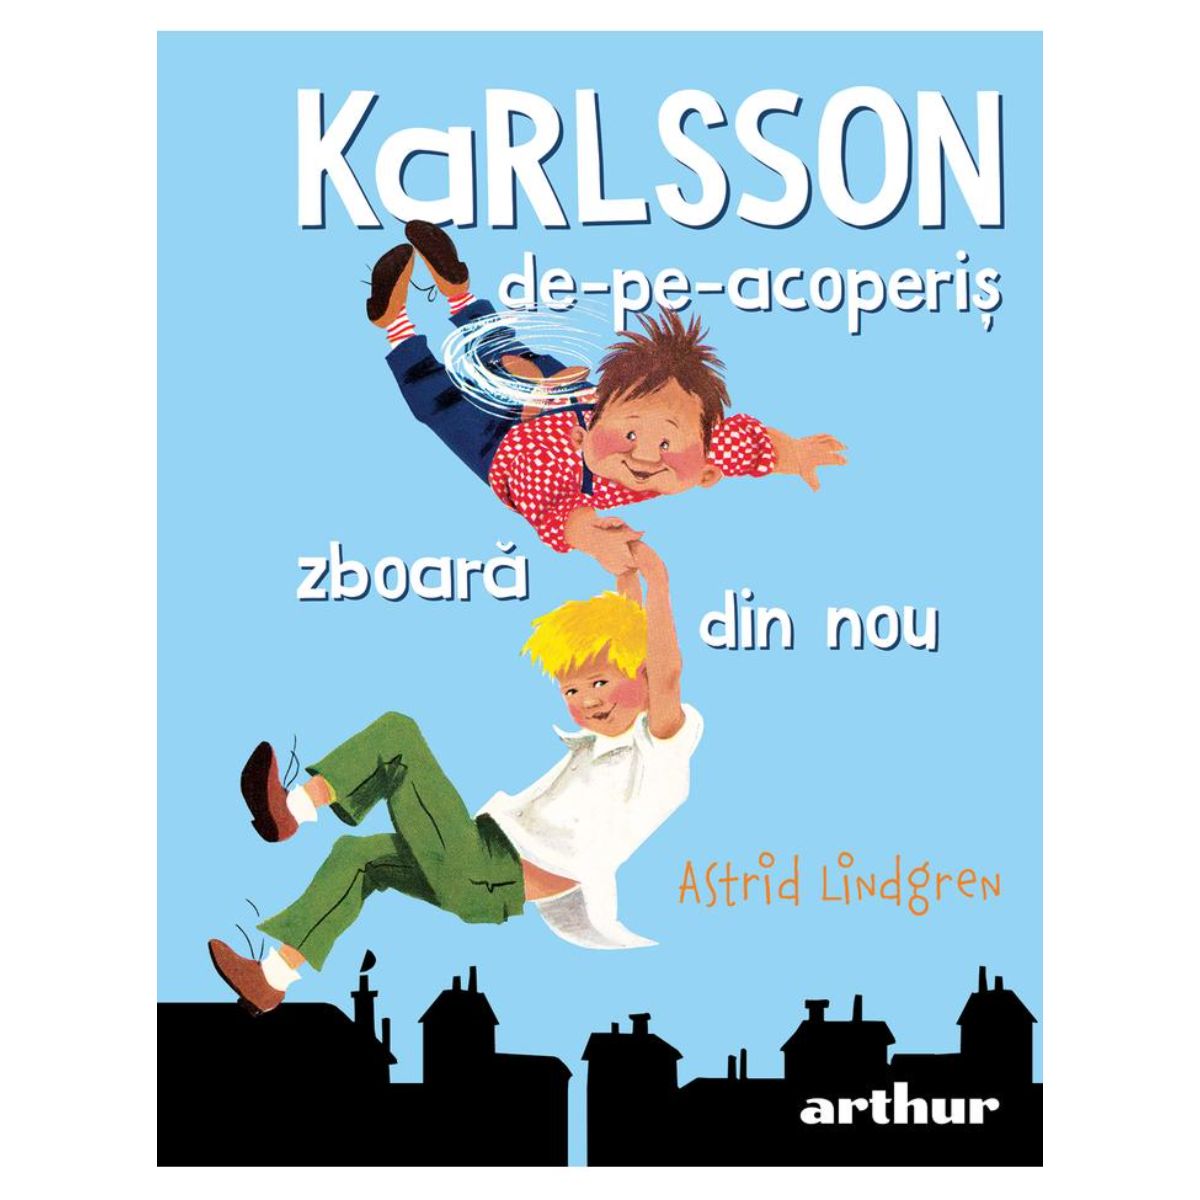 Karlsson de pe acoperis zboara din nou, Astrid Lindgren, Editura Art Acoperis